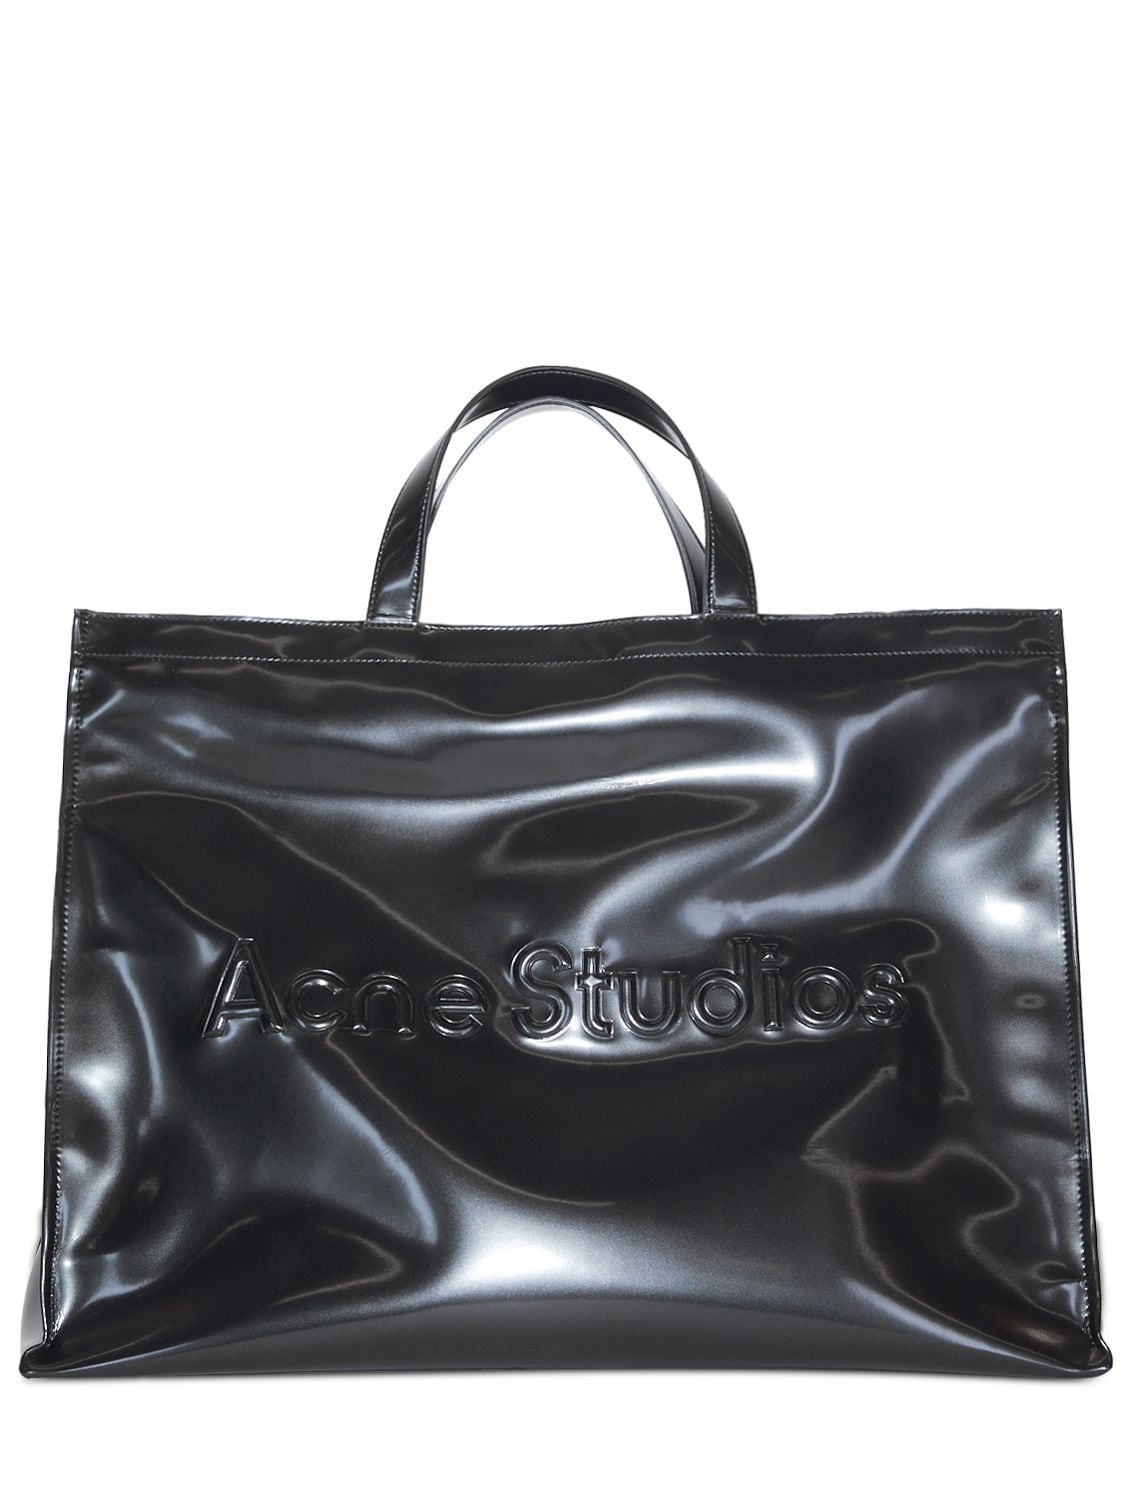 Acne Studios Logo Vinyl Tote Bag In Black